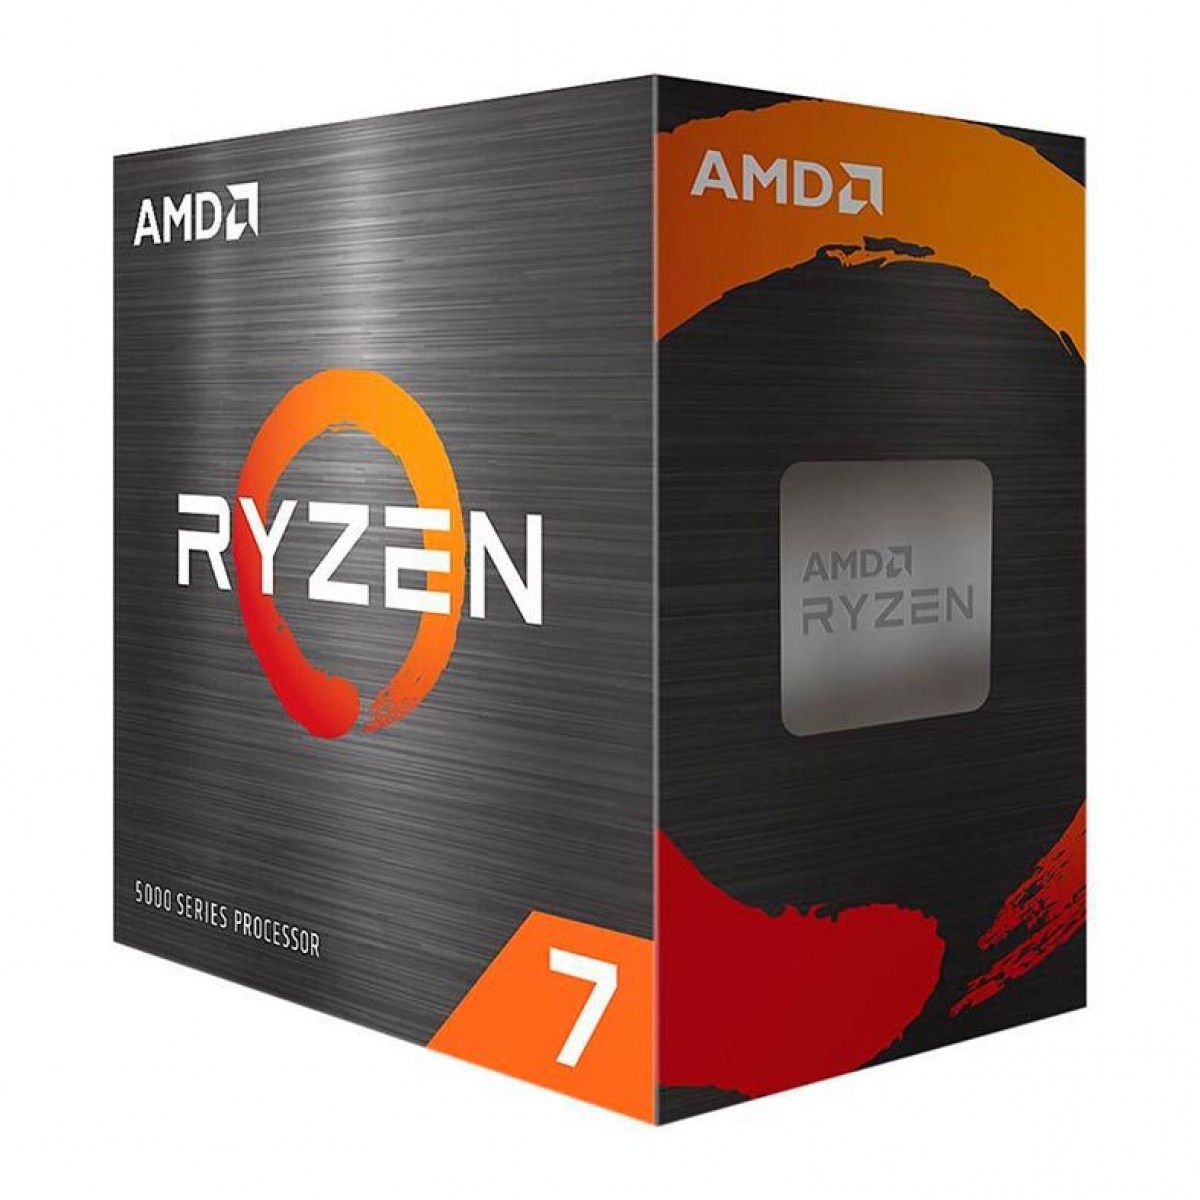 Kit Upgrade, ASUS TUF Gaming X570-Plus + AMD Ryzen 7 5700G